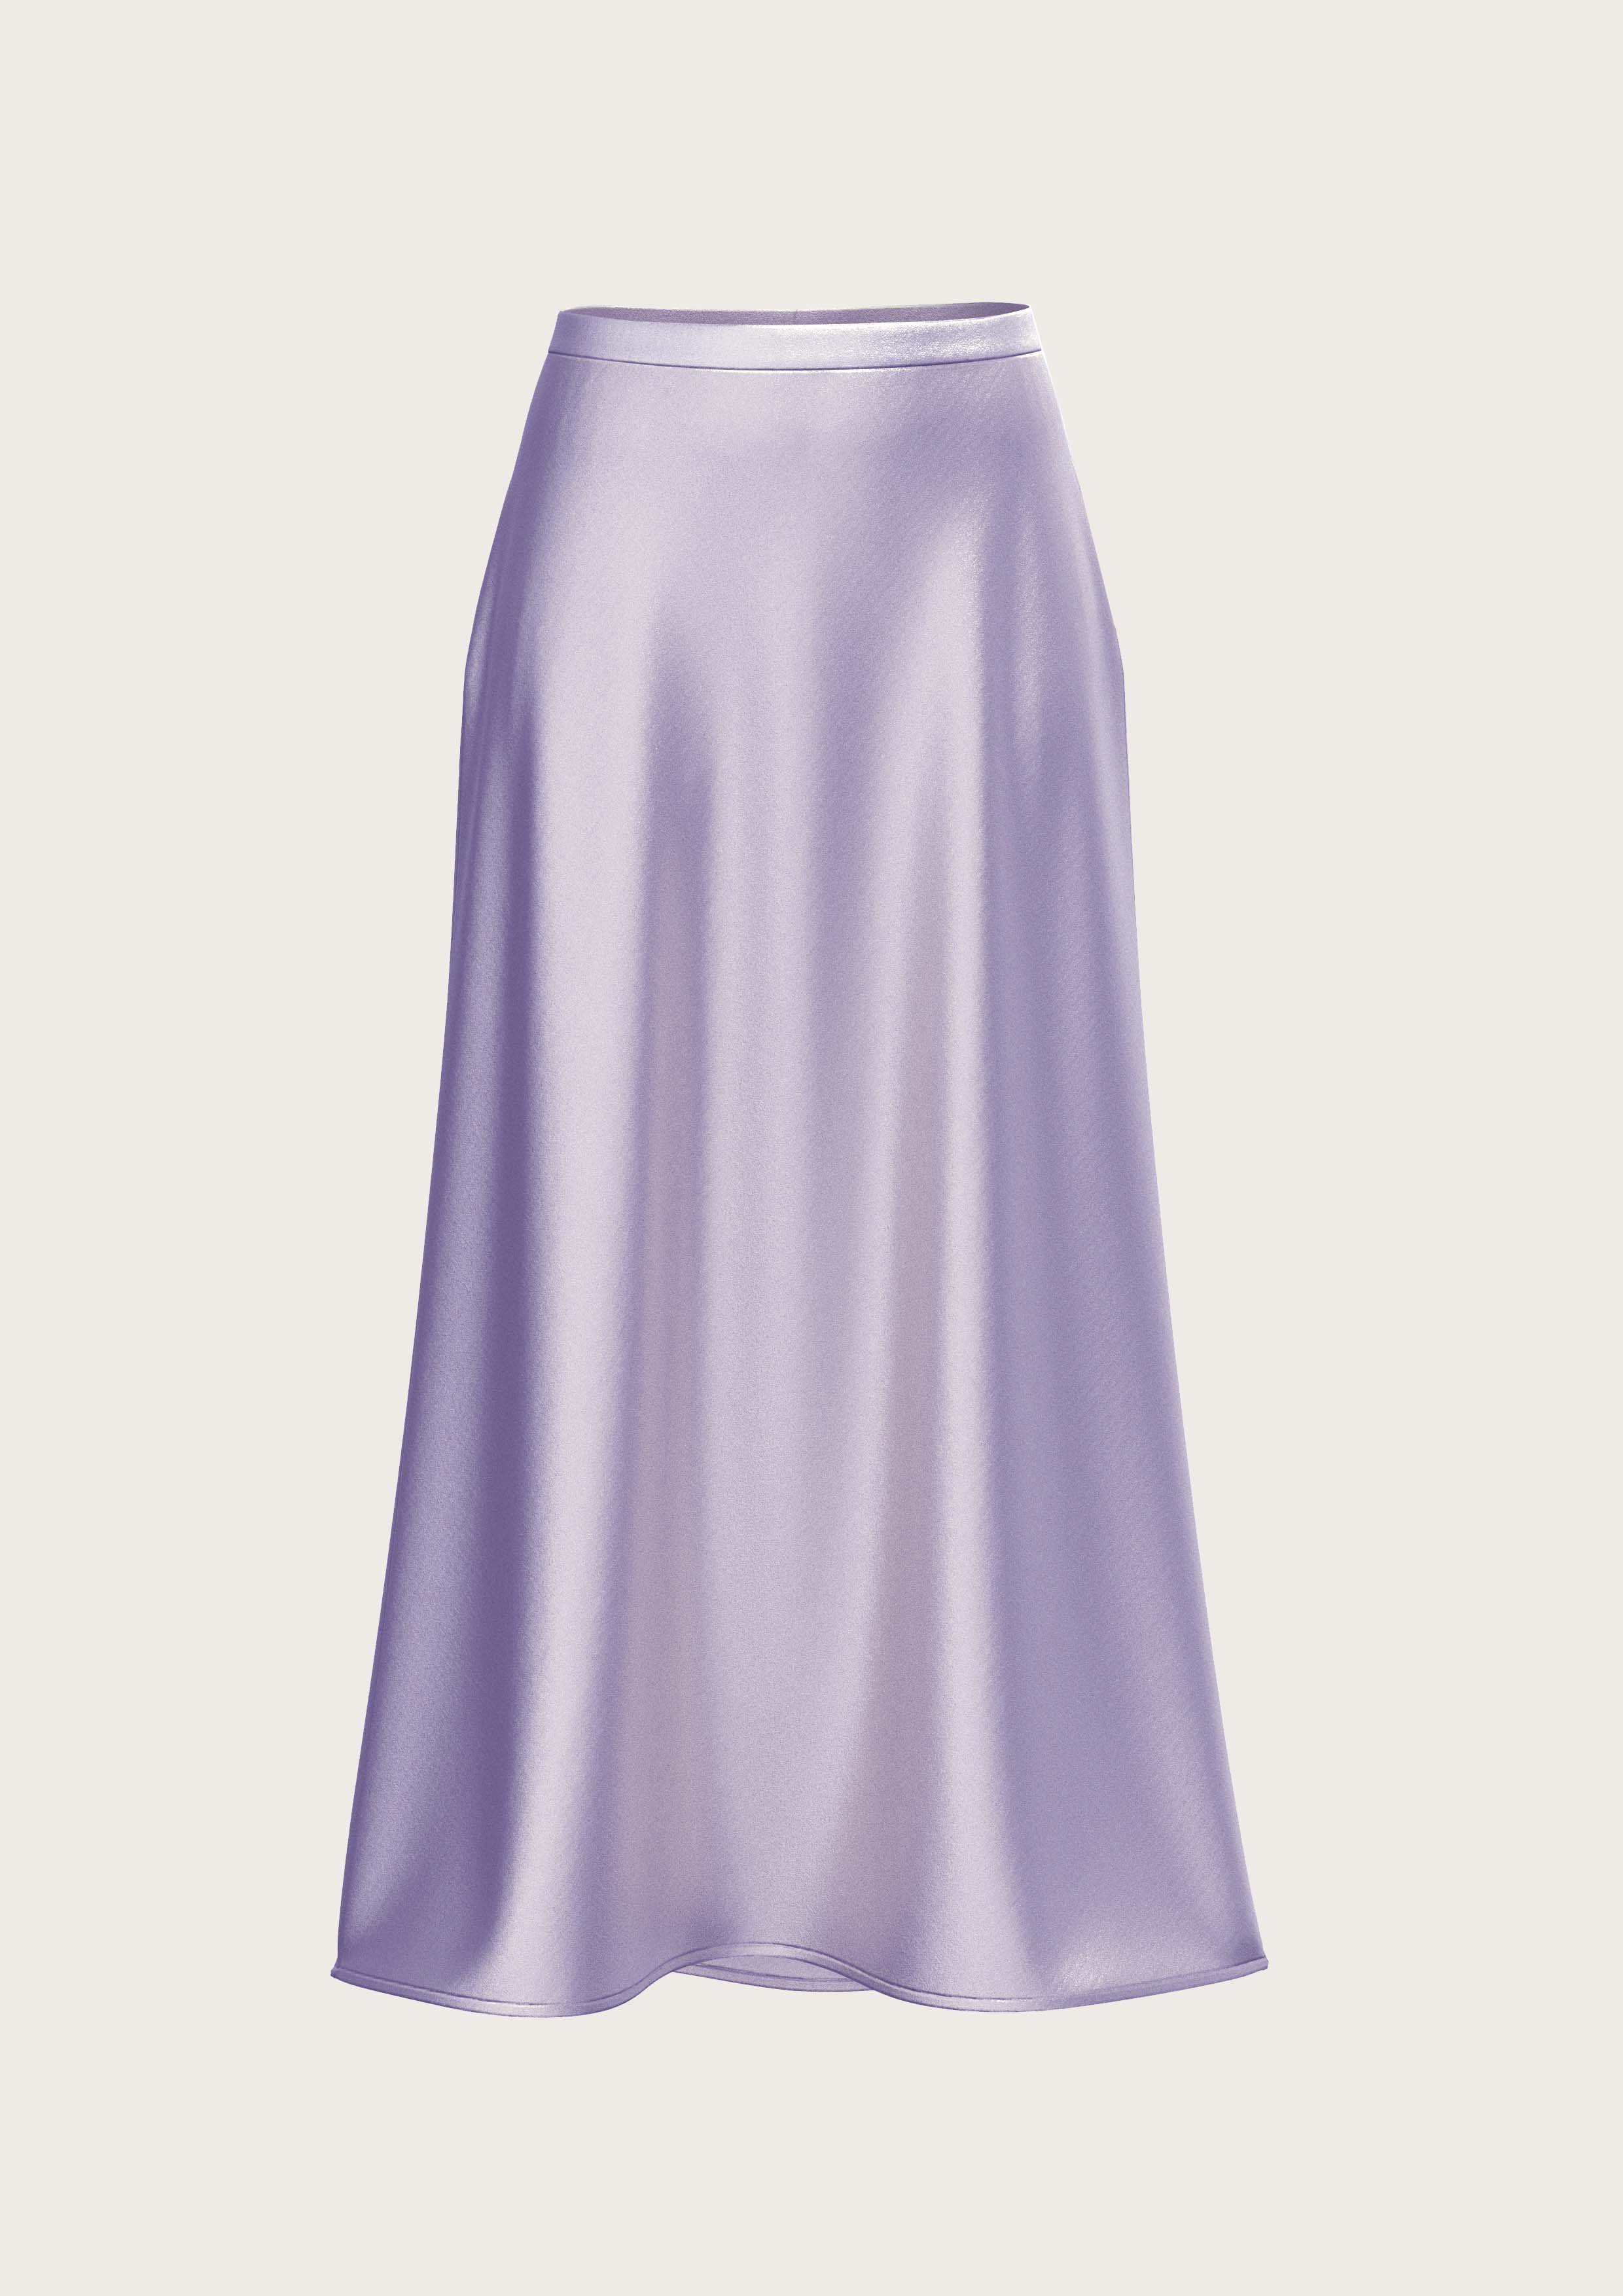 Silk Midi Skirt Meena in Lavender (Kopie) (Kopie) (Kopie)